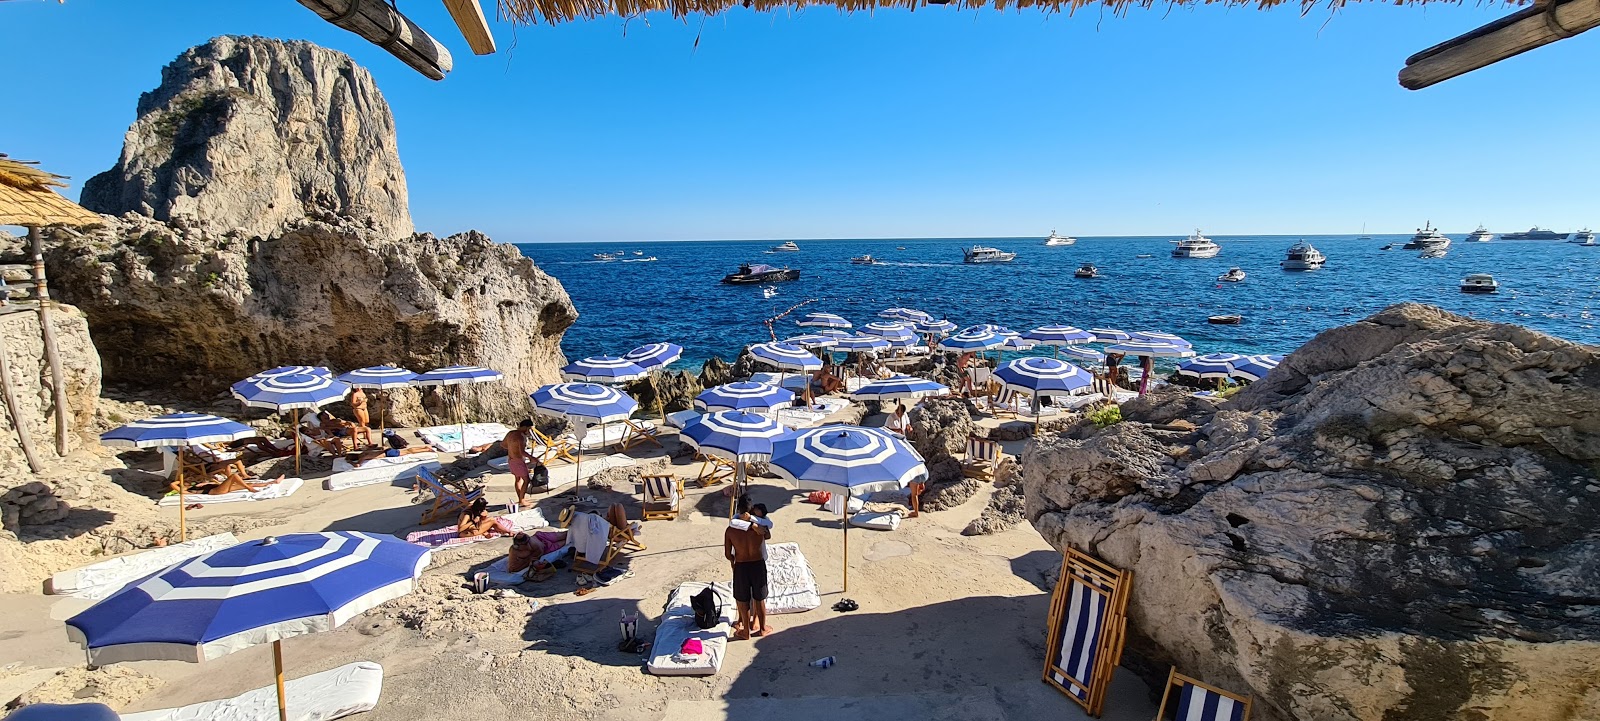 Foto av Spiaggia La Fontelina med hög nivå av renlighet